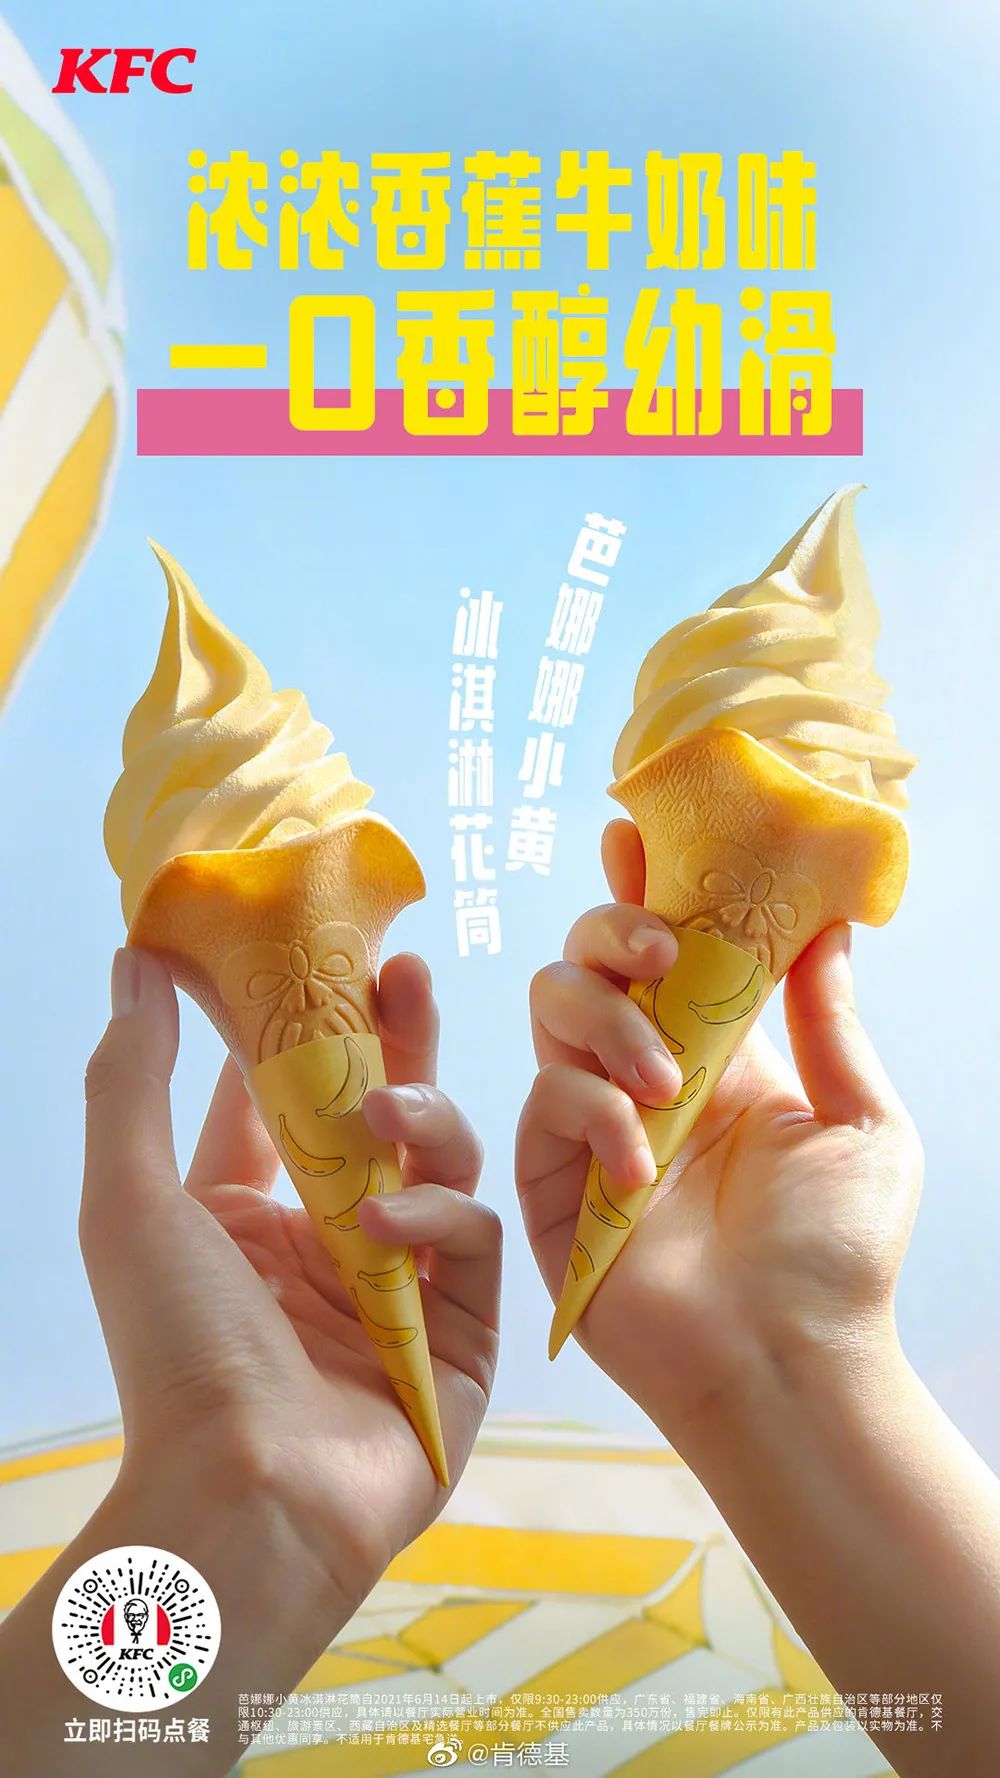 15款肯德基冰淇淋海报设计